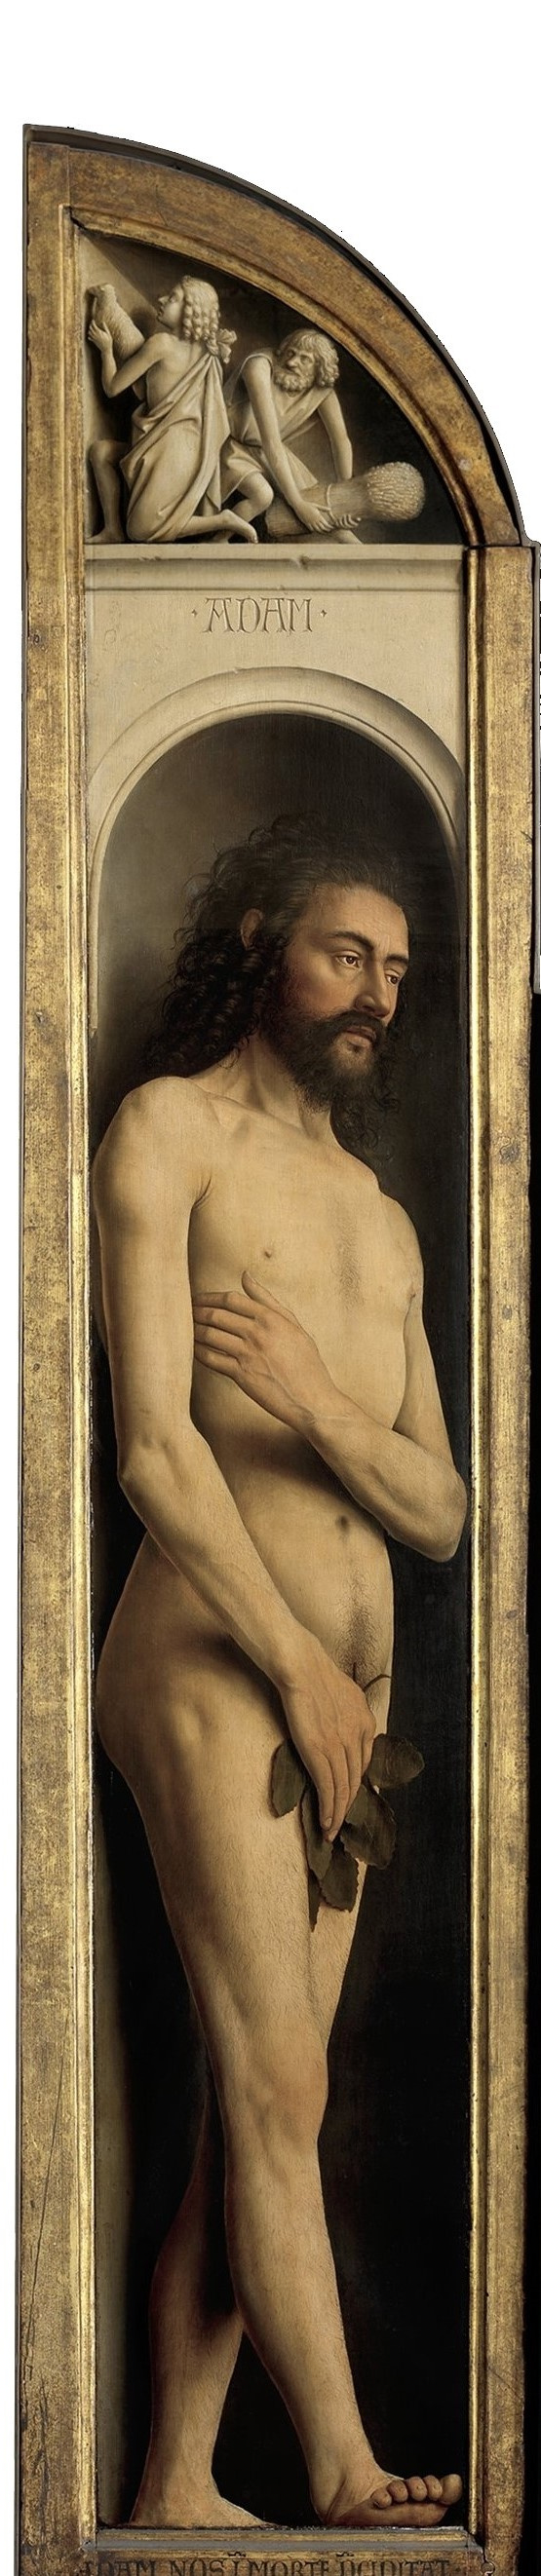 Jan van Eyck. The Ghent altarpiece. Adam (fragment)